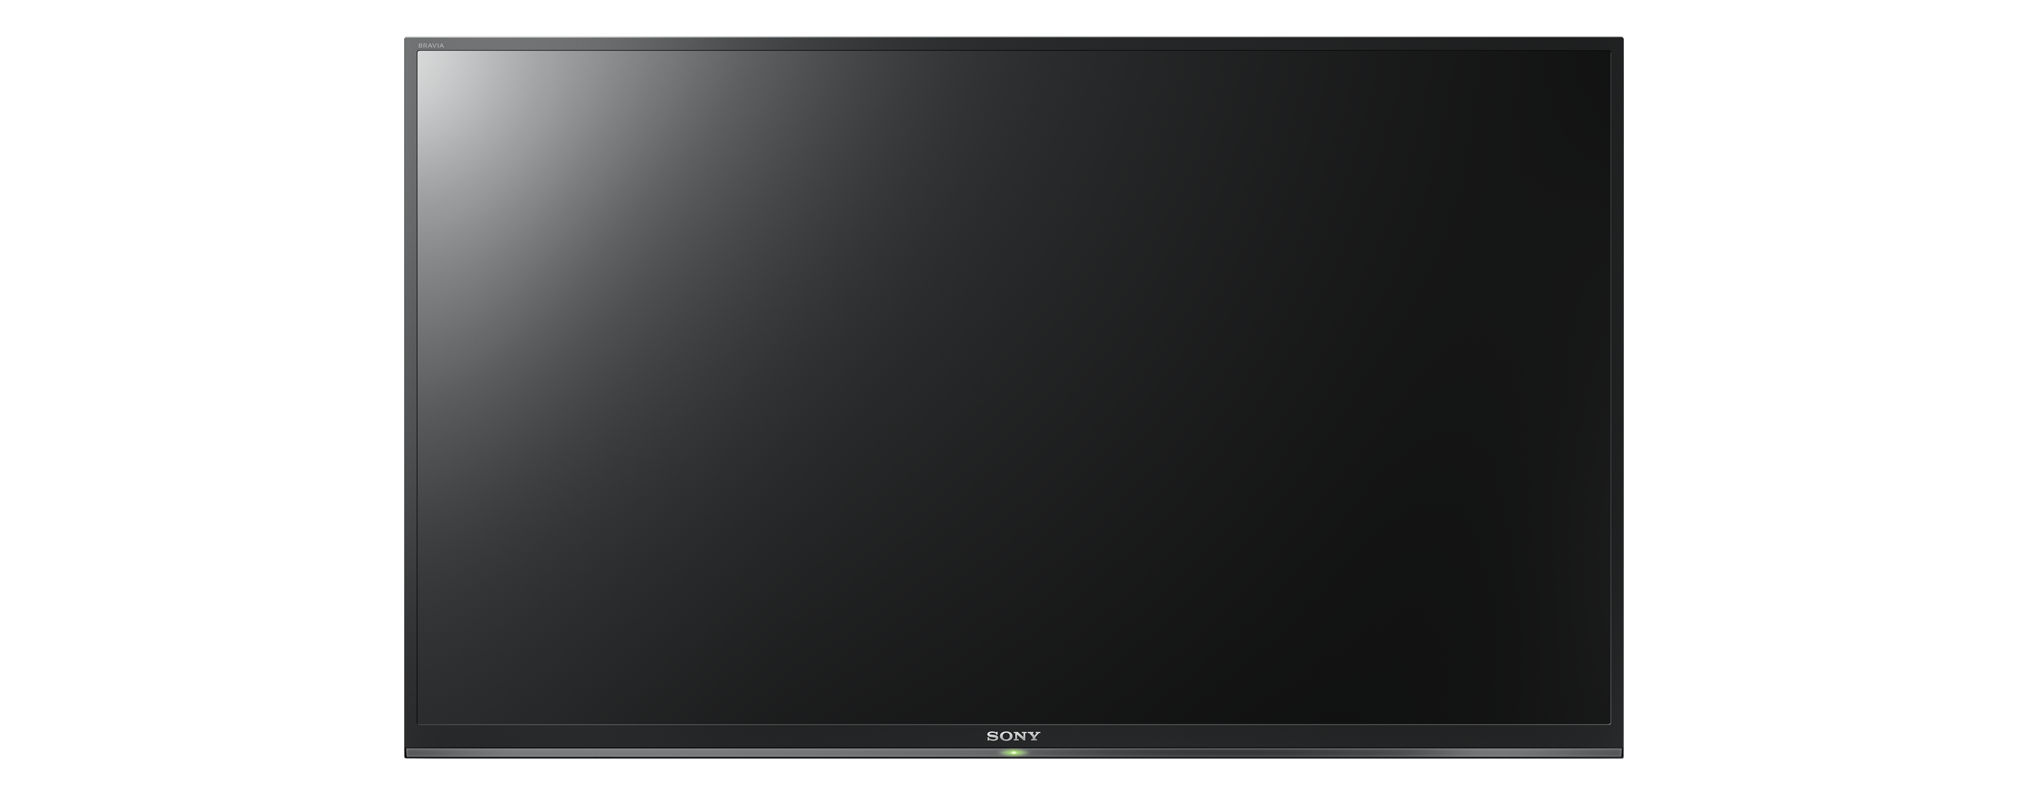 SONY KDL-32W6605 LED cm, 32 Zoll HD-ready, (Flat, TV, / Linux) SMART 80 TV